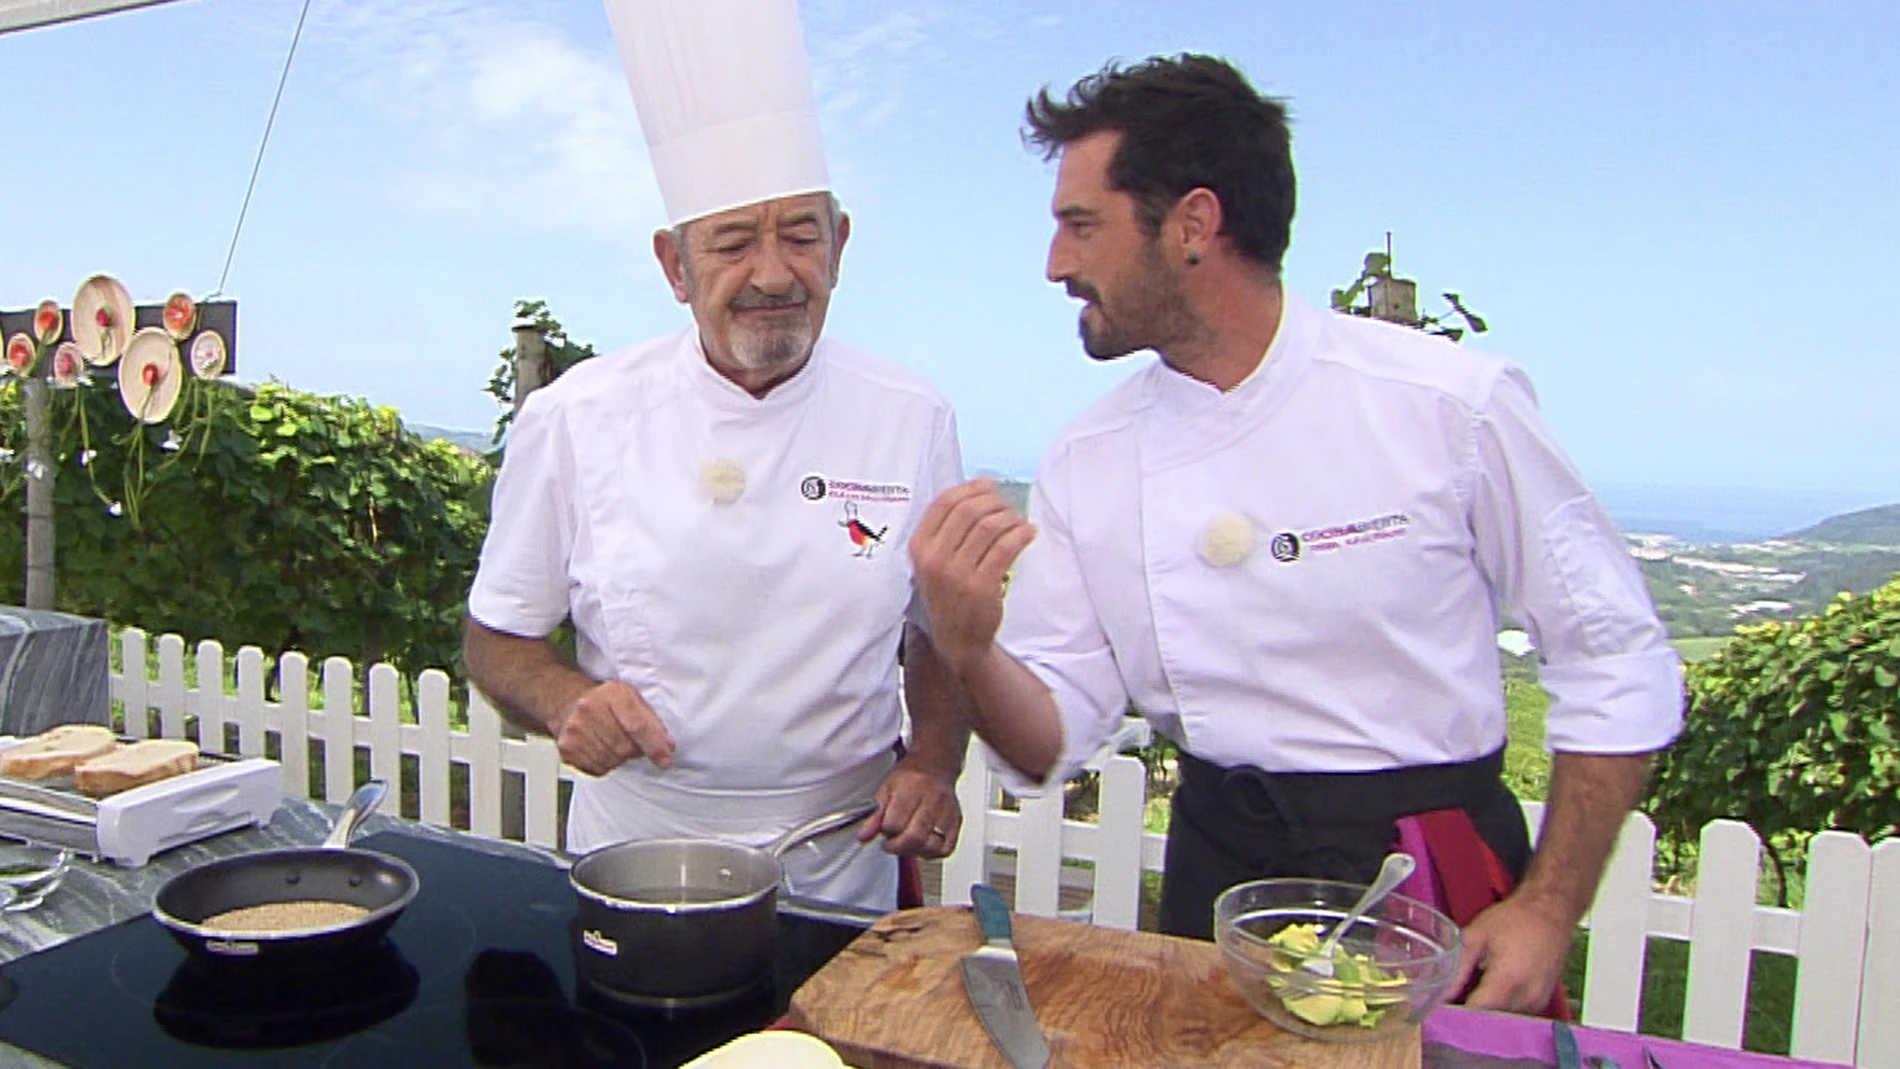 Joseba Arguiñano introduce un ingrediente al guacamole que no convence a su padre Karlos Arguiñano